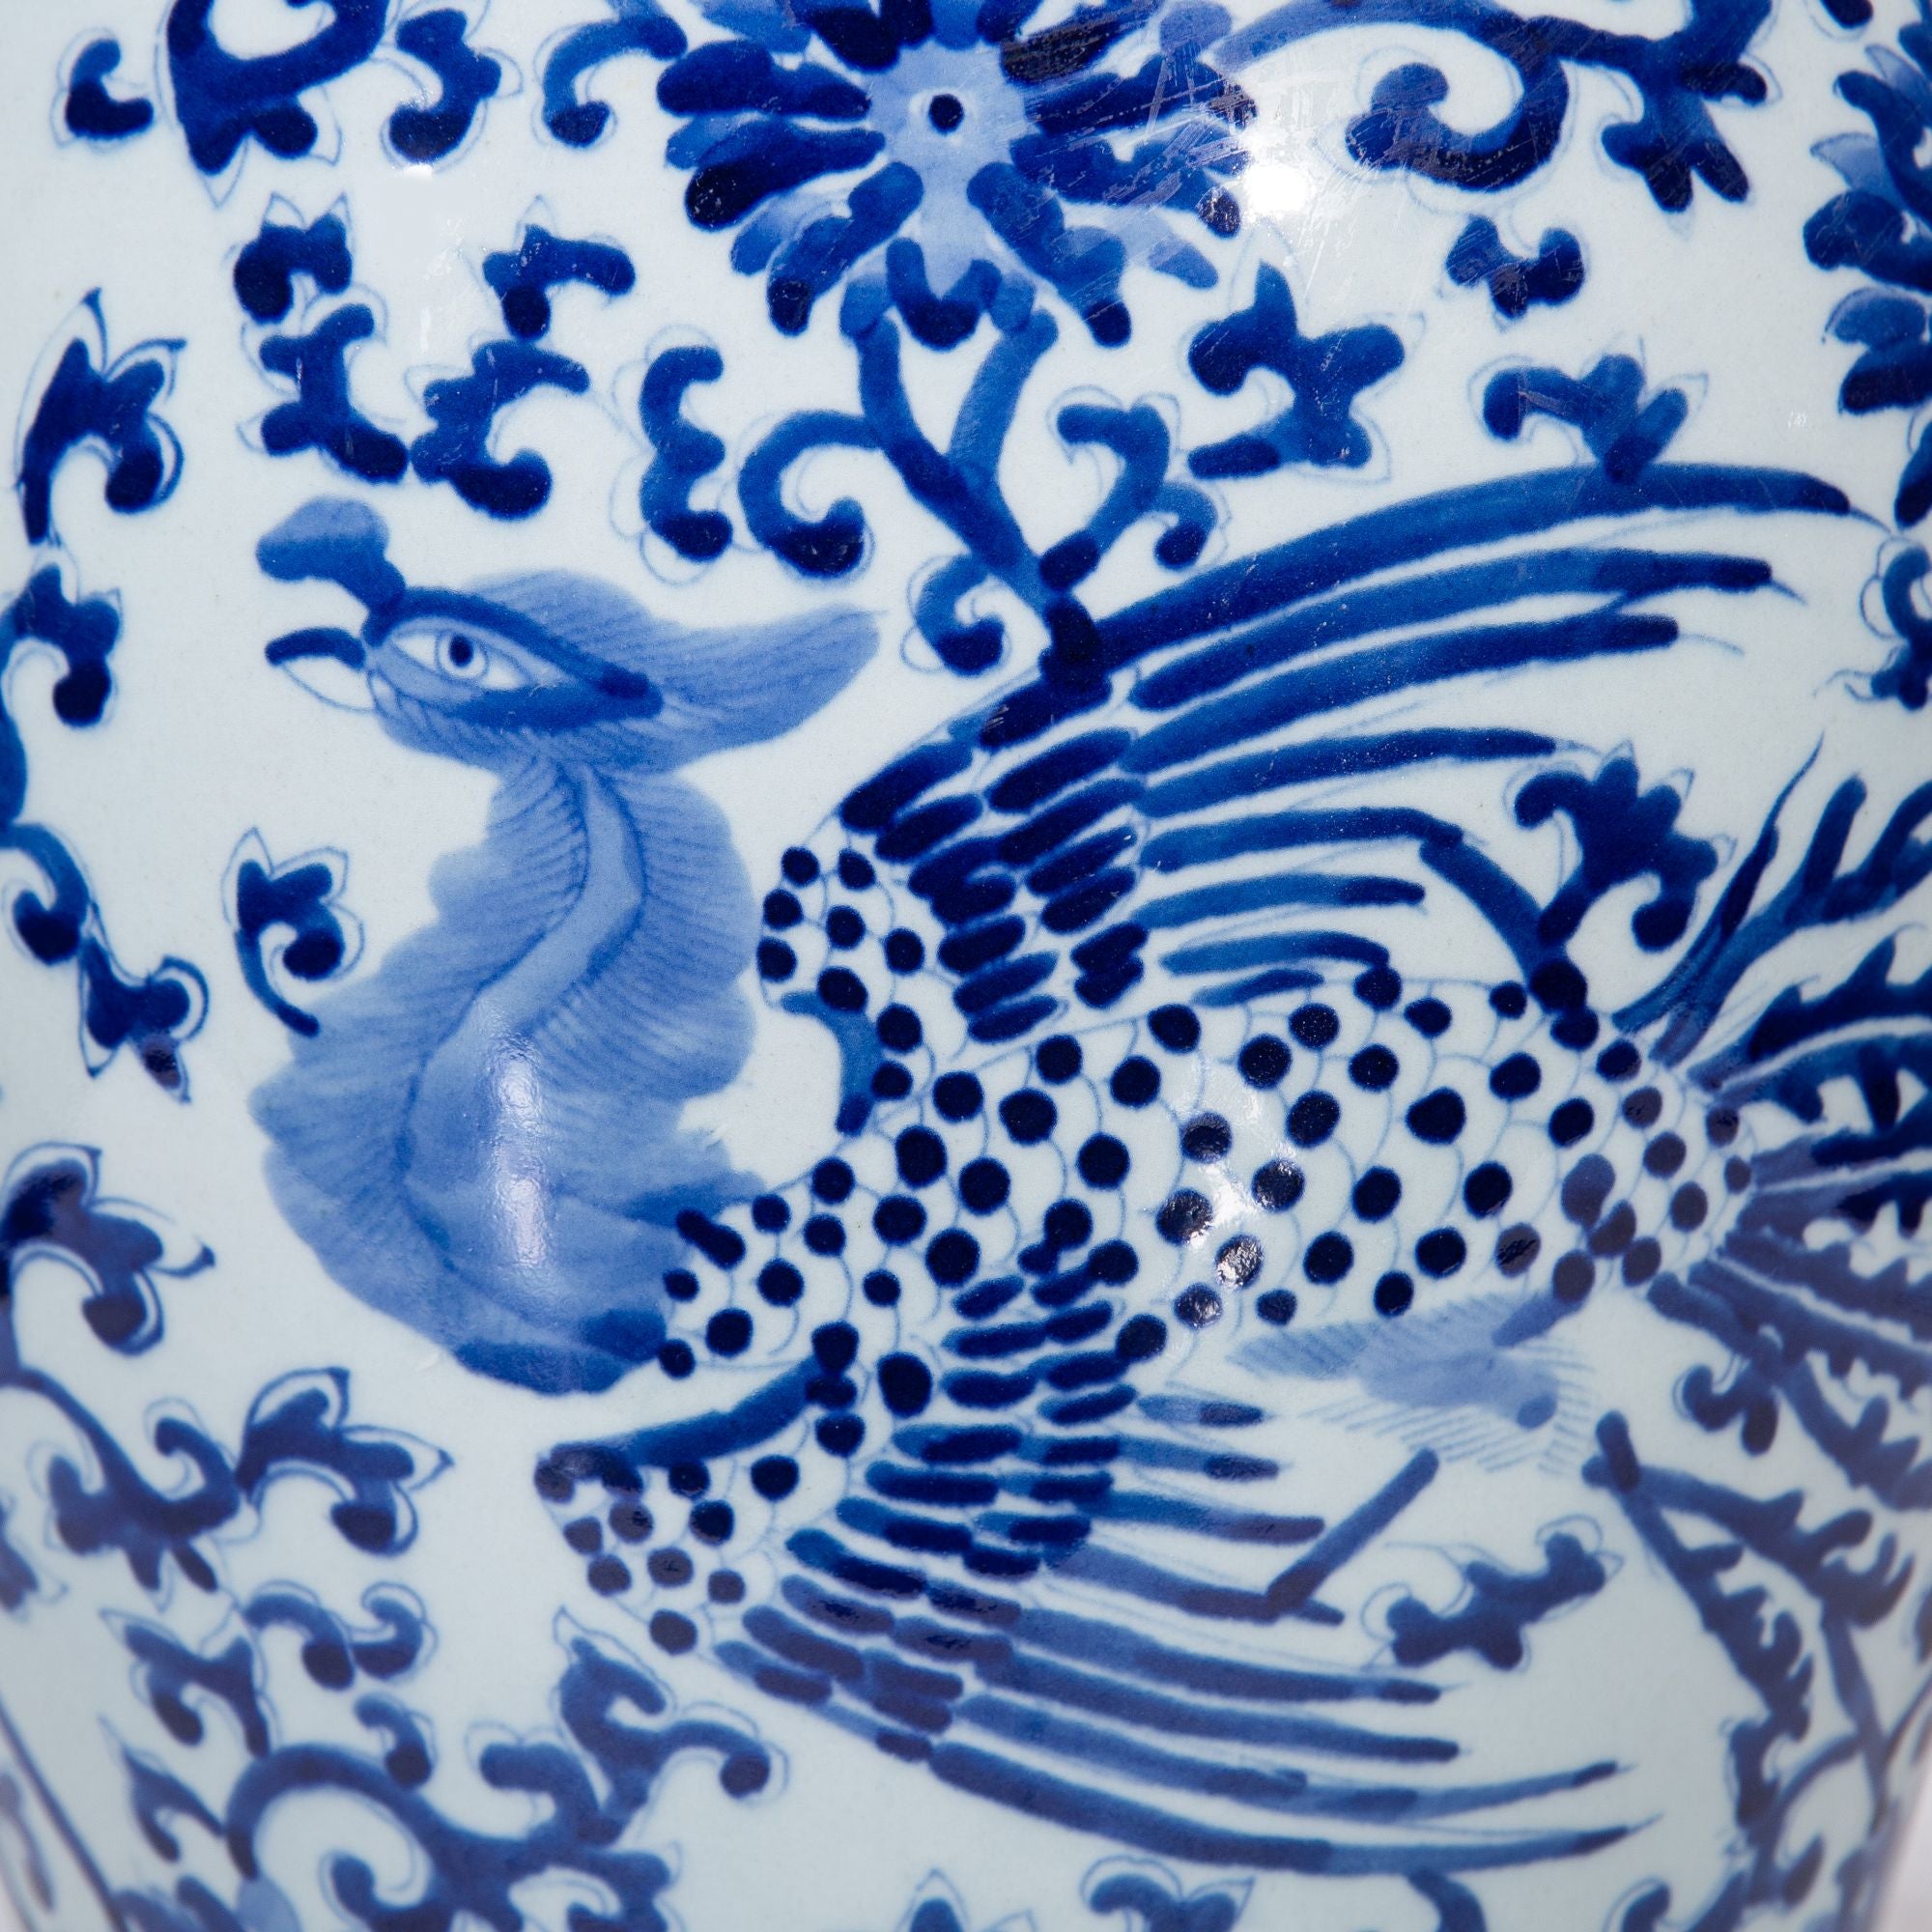 Legend of Asia Home Decor Legend of Asia Blue White Porcelain Phoenix Temple Jar